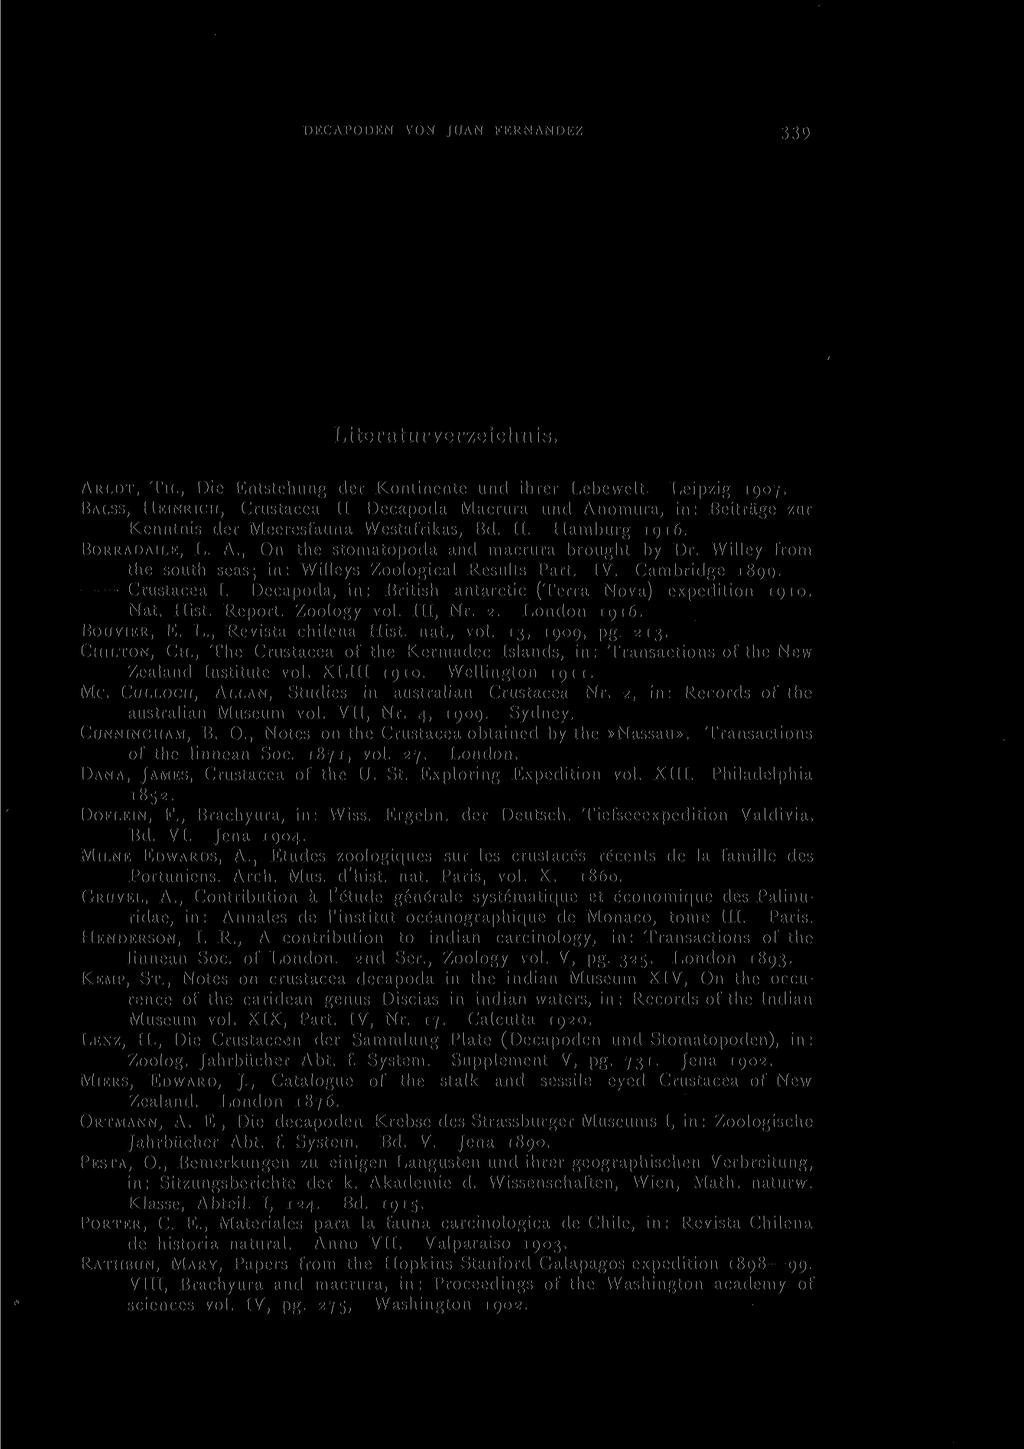 DECAPODEN VON JUAN FERNANDEZ 33 1 Literaturverzeichnis. ARLDT, TH., Die Entstehung der Kontinente und ihrer Lebewelt. Leipzig 1907.